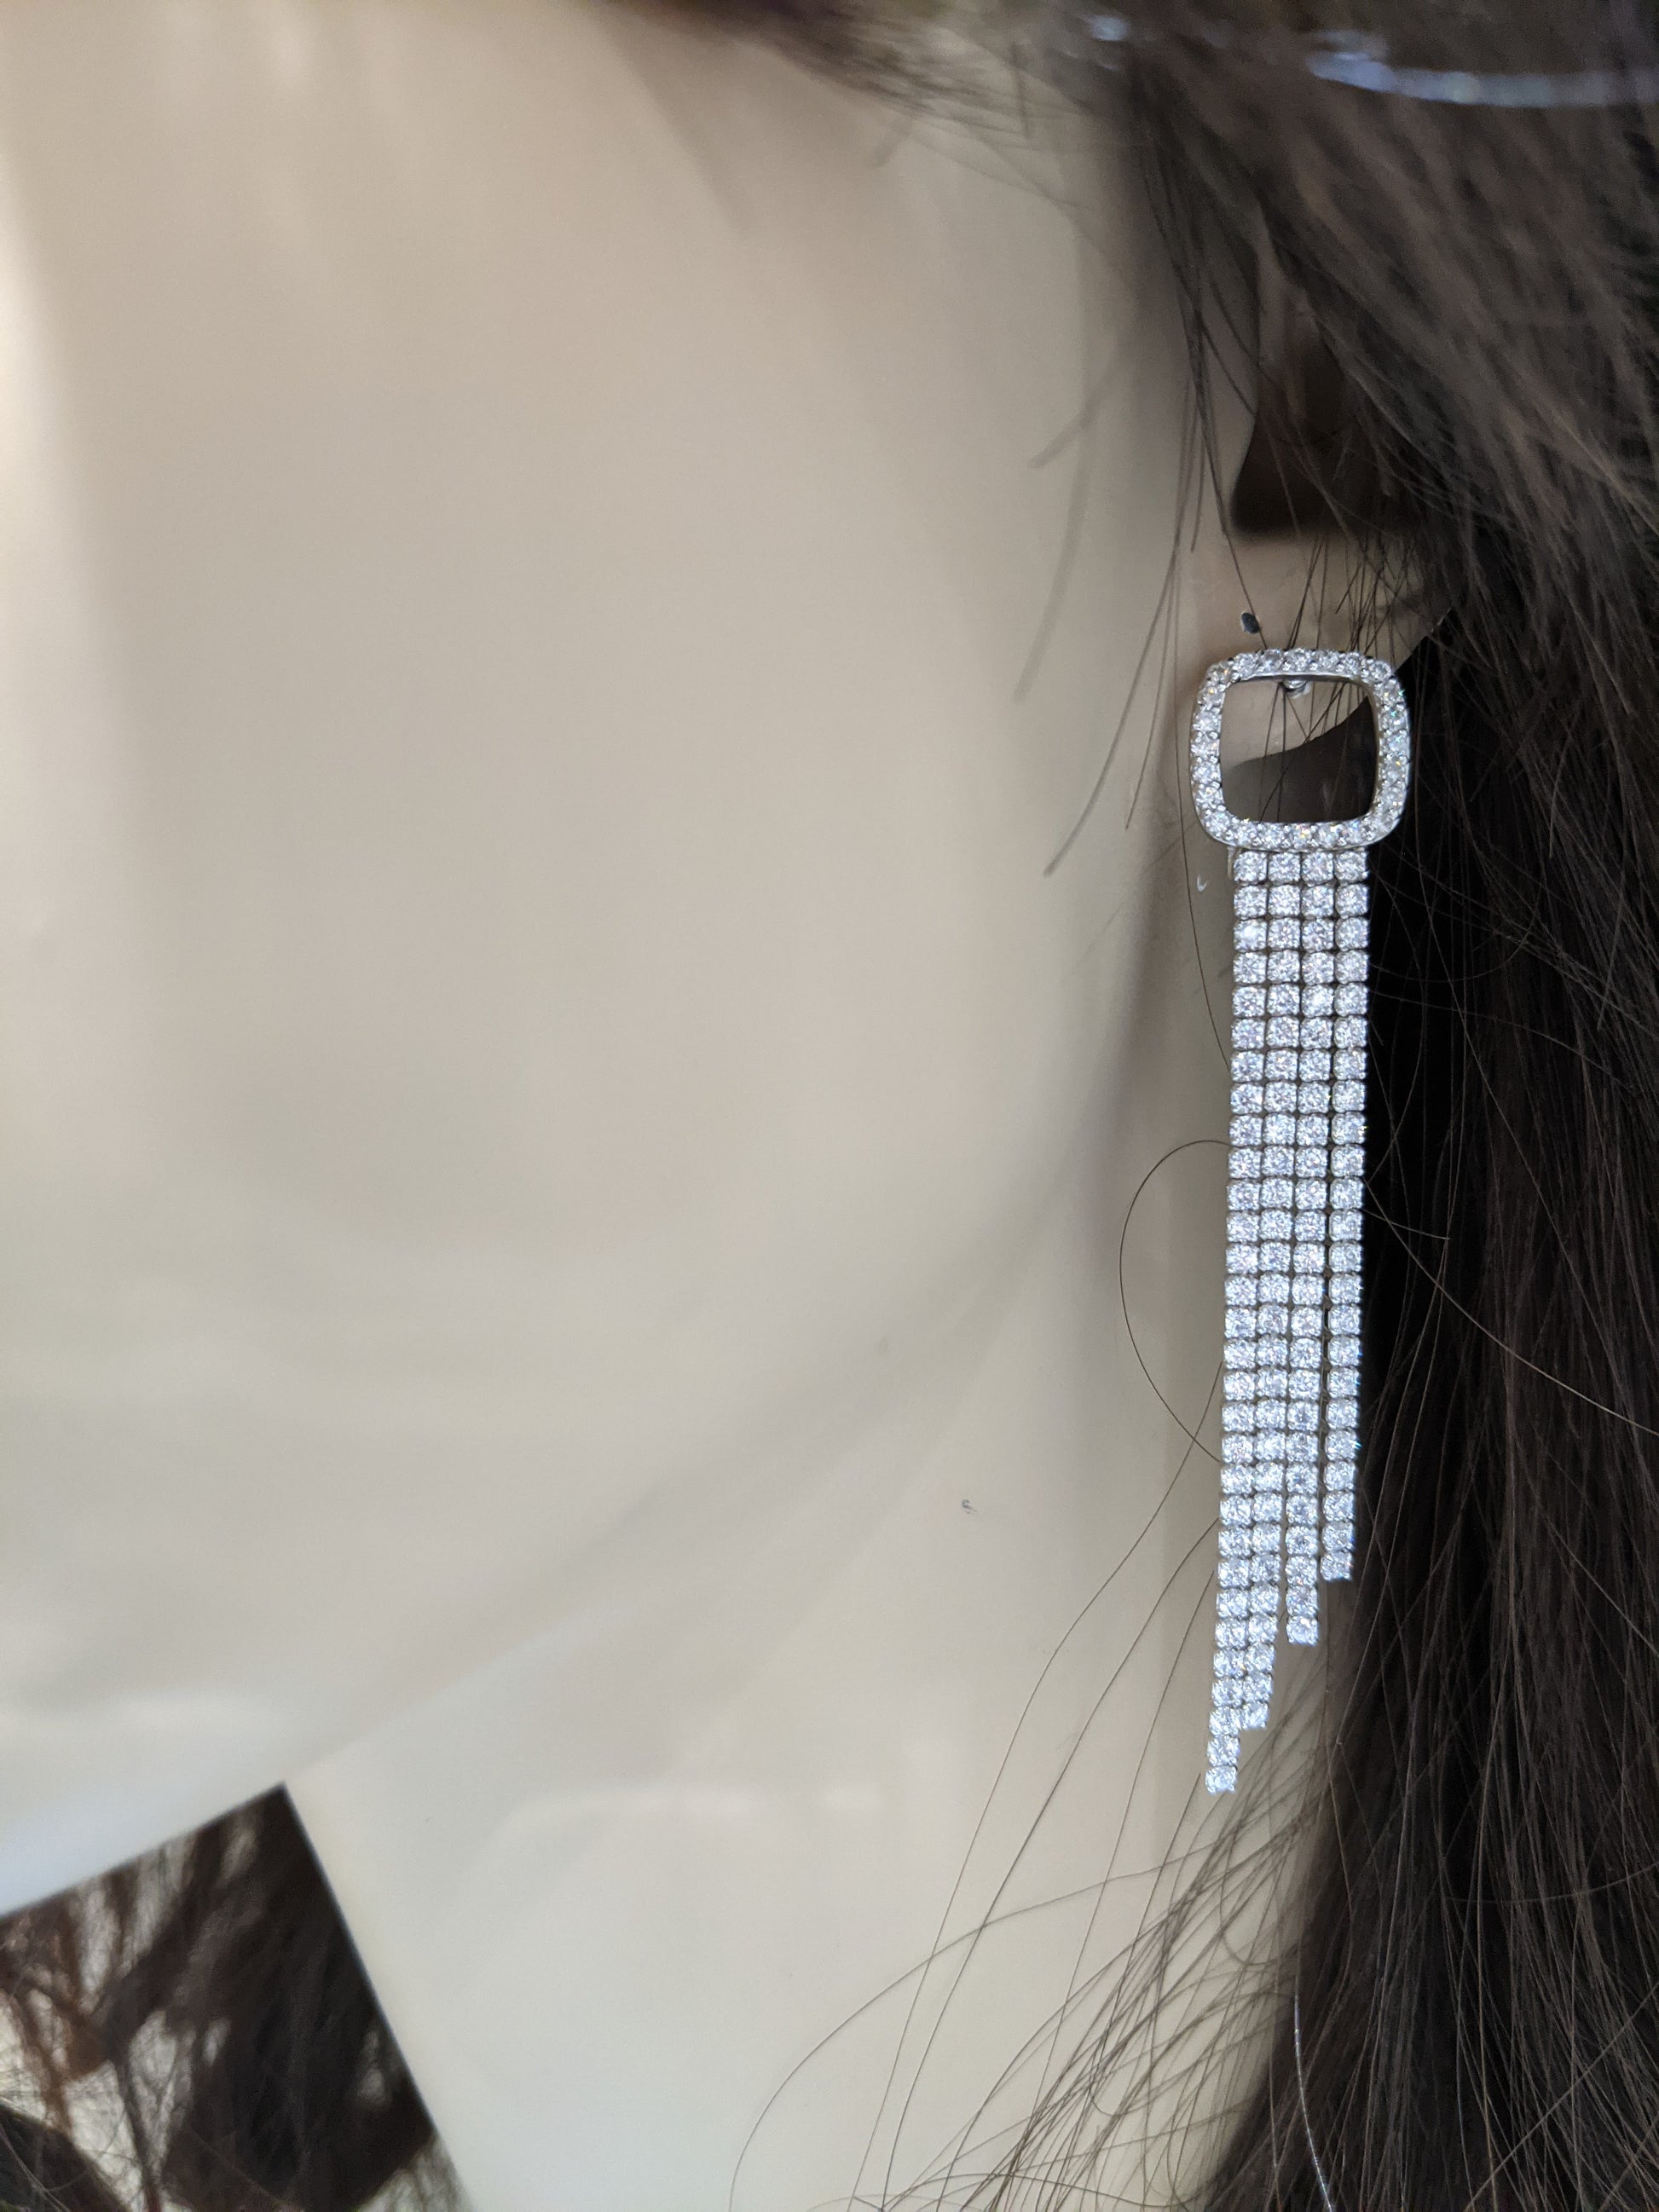 Sterling Silver CZ Long Tennis Strands Earring - HK Jewels